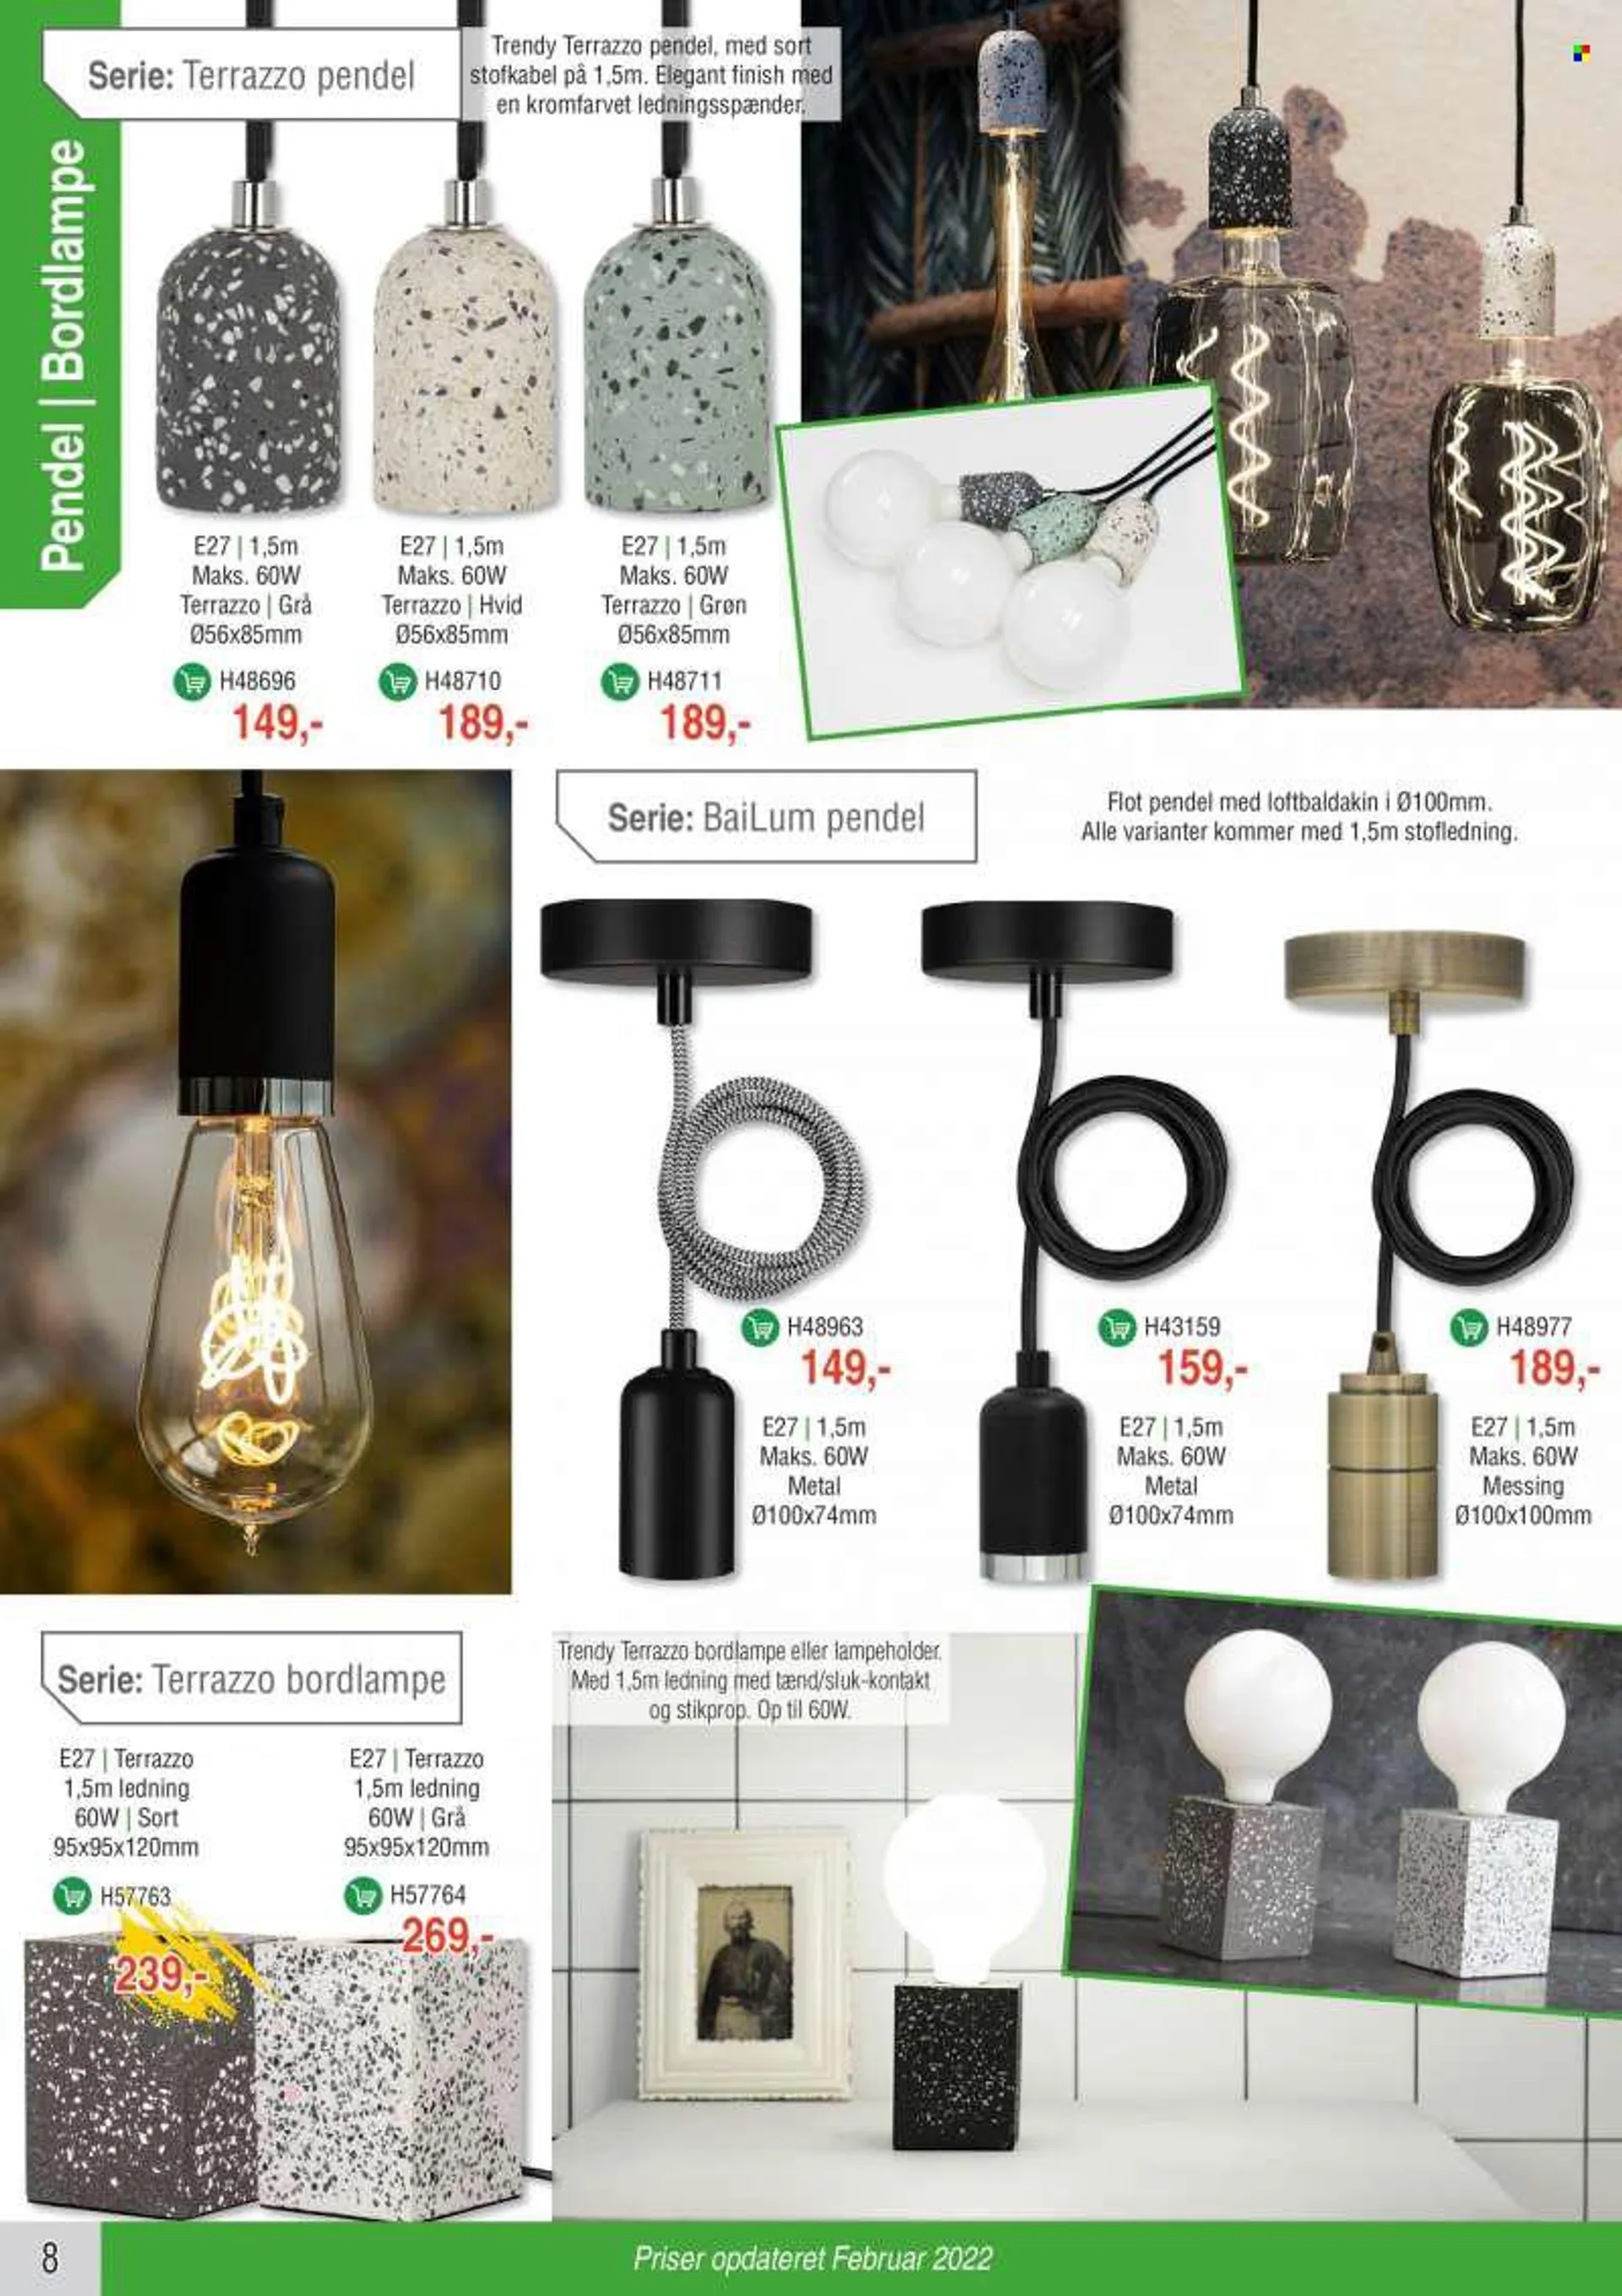 Elextra tilbud  - tilbudsprodukter - bordlampe, pendel. Side 8.